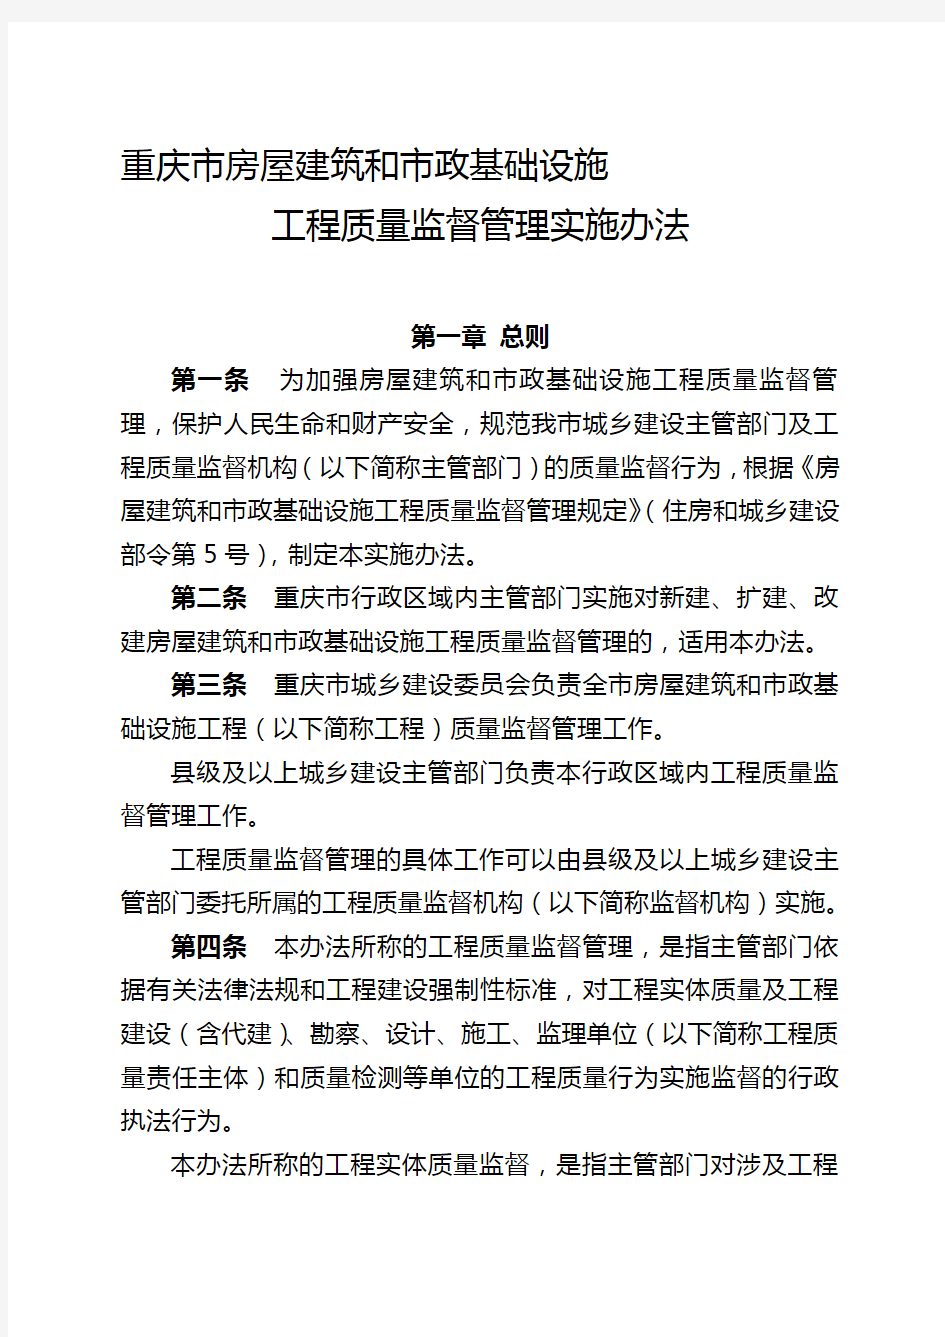 重庆市房屋建筑和市政基础设施工程质量监督管理实施办法